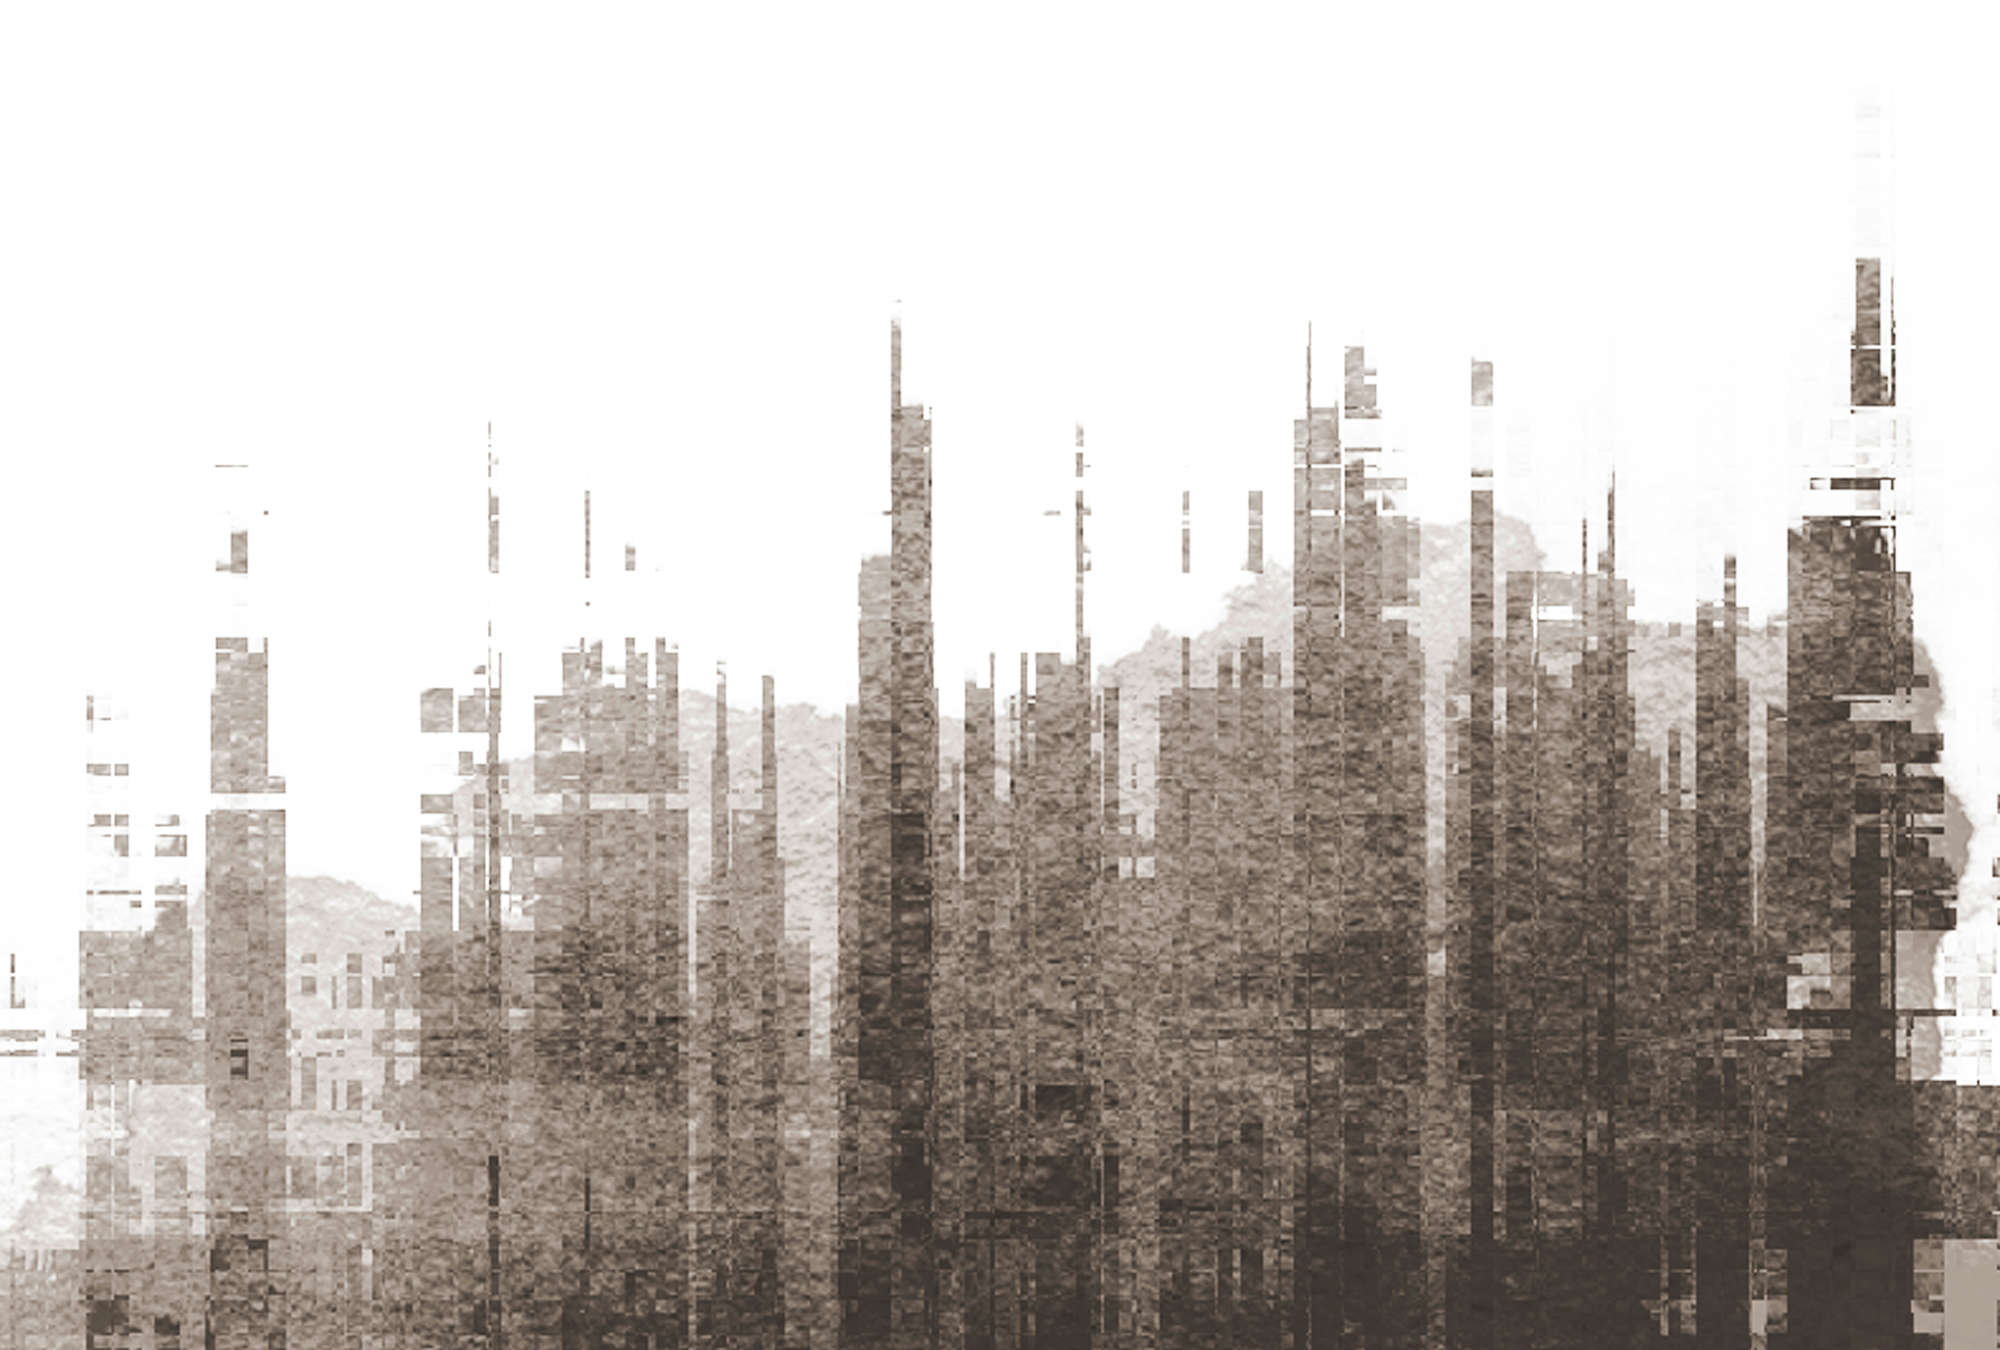             Fototapete Streifendesign & abstrakter Skyline, Kunst – Weiß, Grau, Schwarz
        